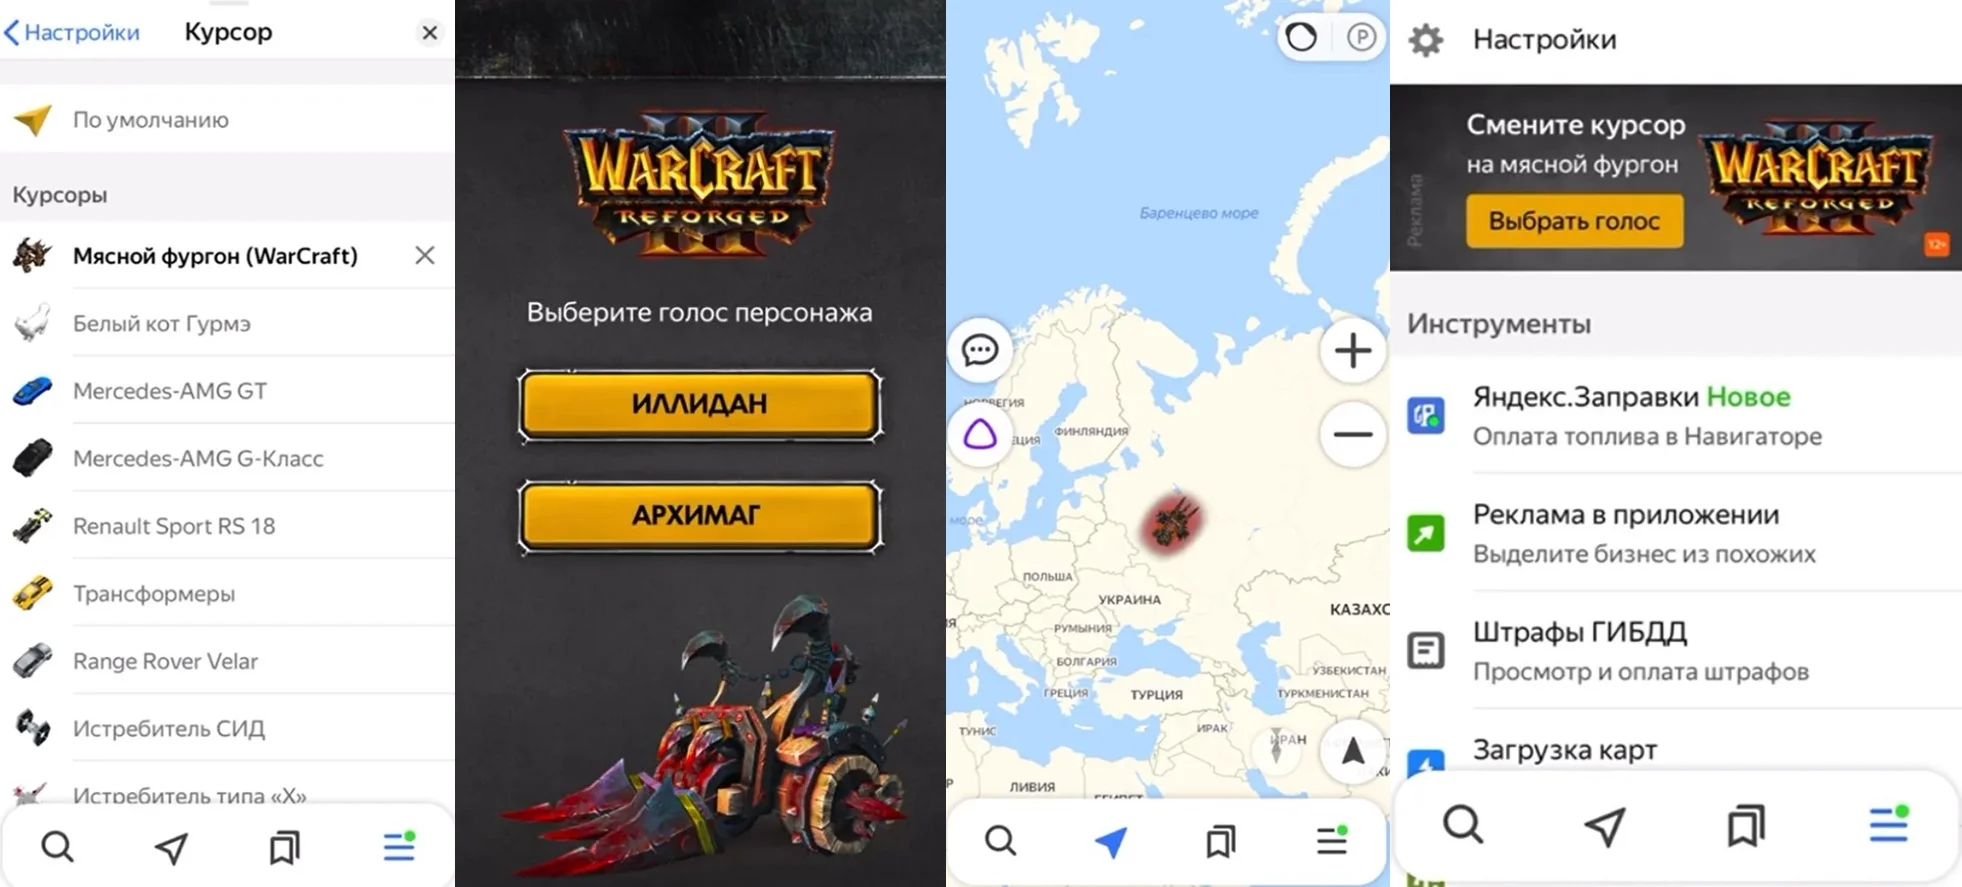 В «Яндекс.Навигаторе» появились голоса Архимага и Иллидана из Warcraft III - фото 1